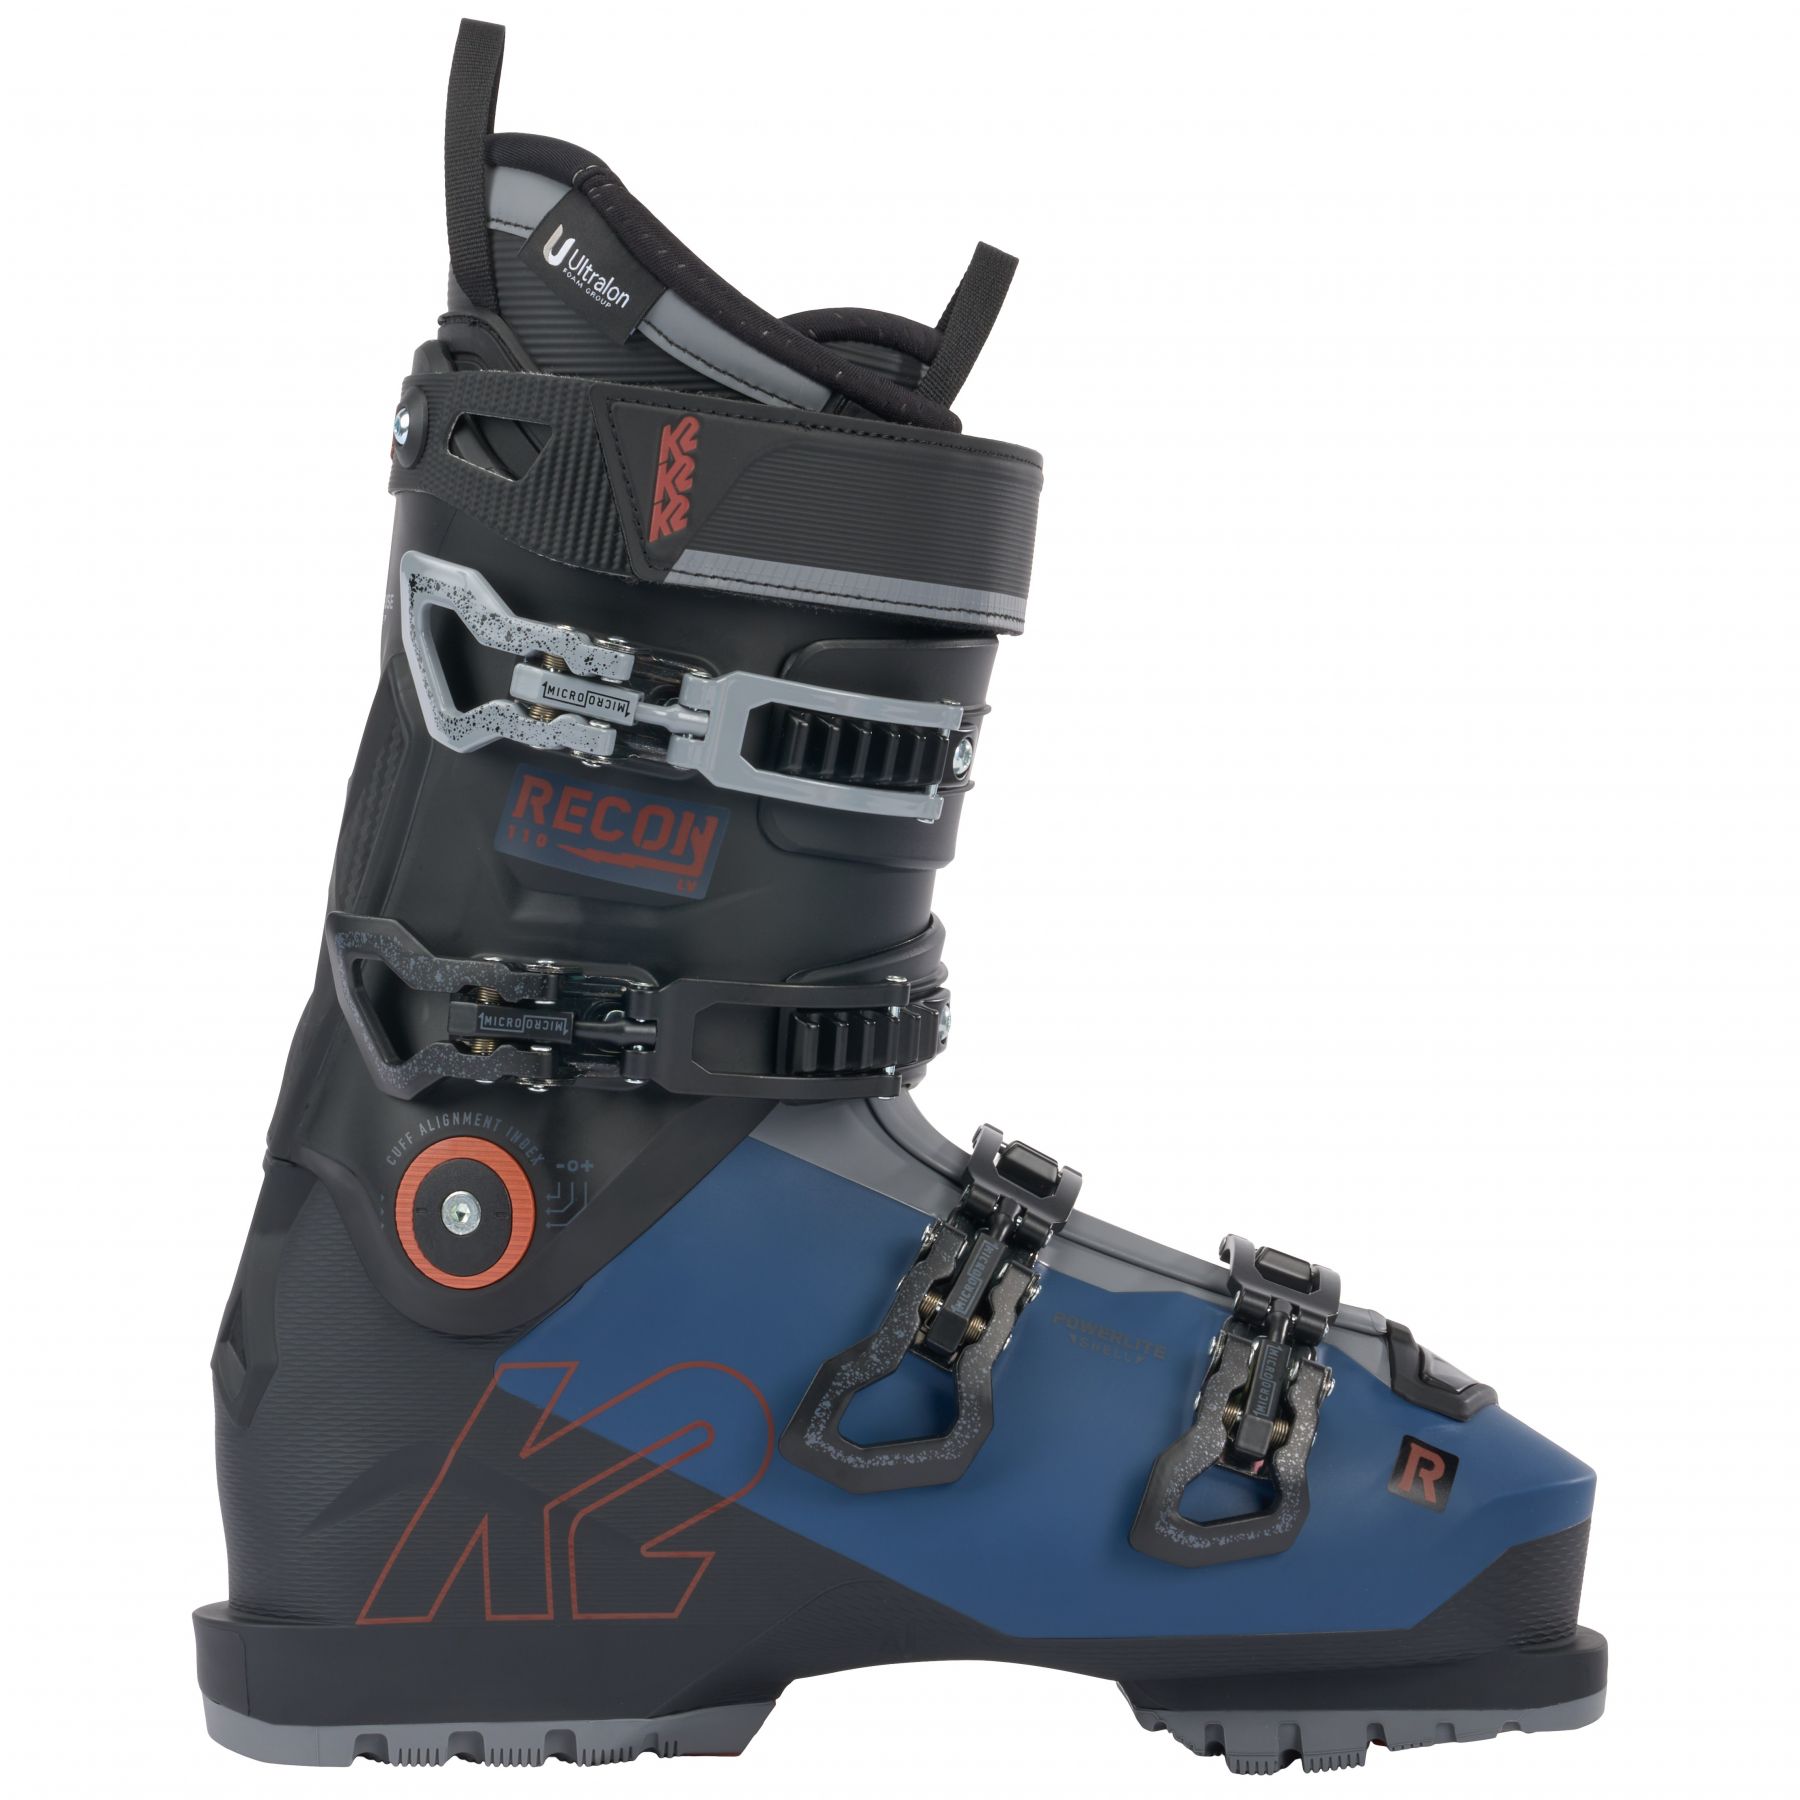 Billede af K2 Recon 110 MV, skistøvler, herre, mørkeblå/sort